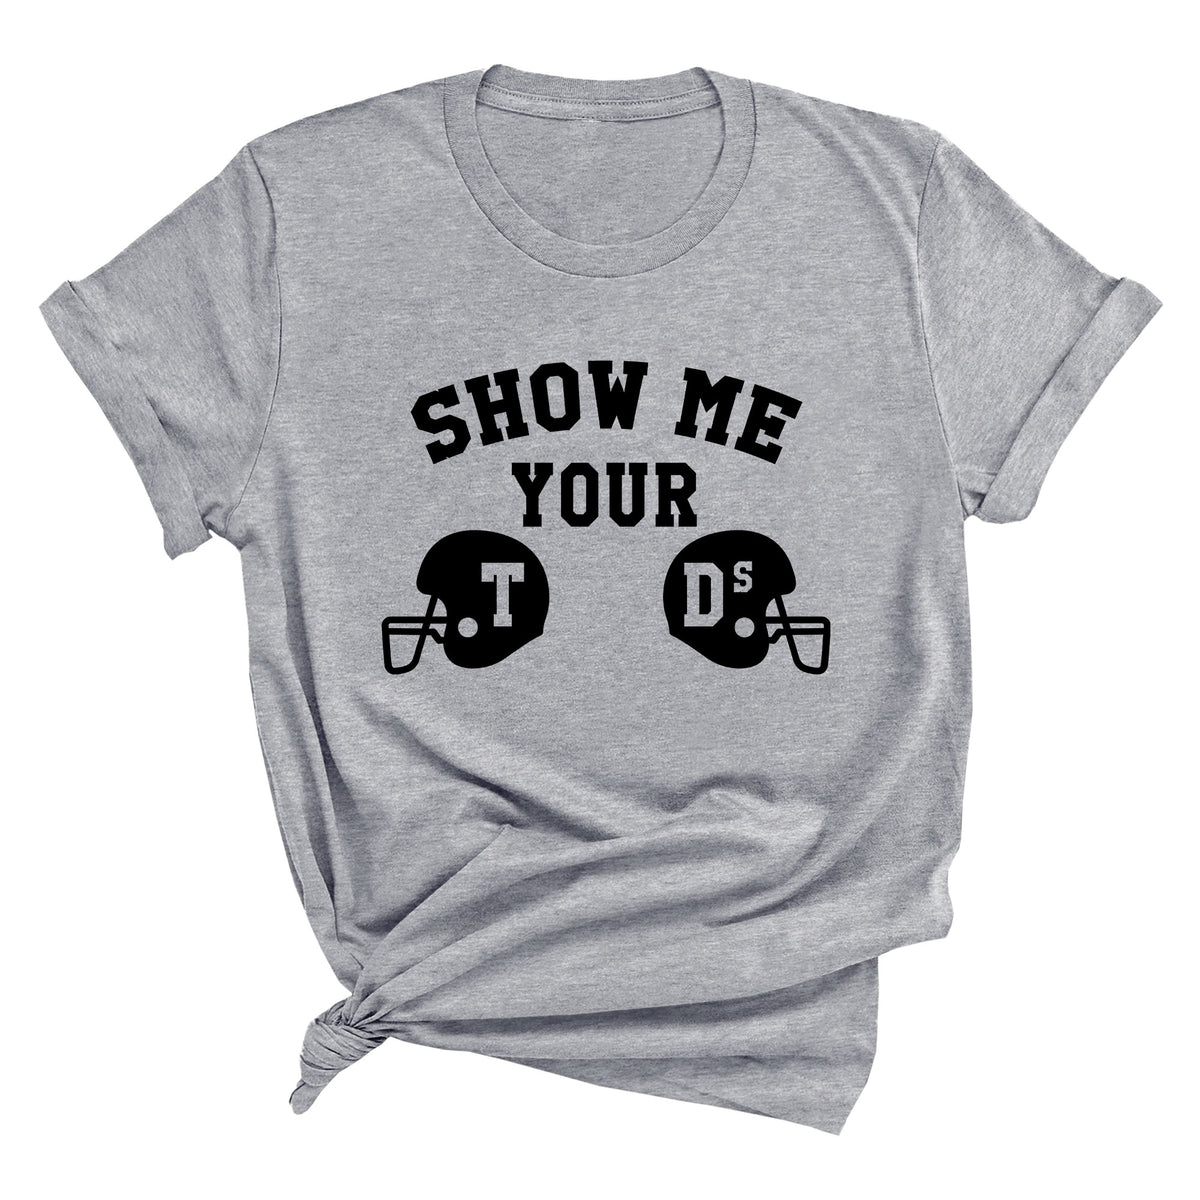 Show Me Your TDs Unisex T-Shirt